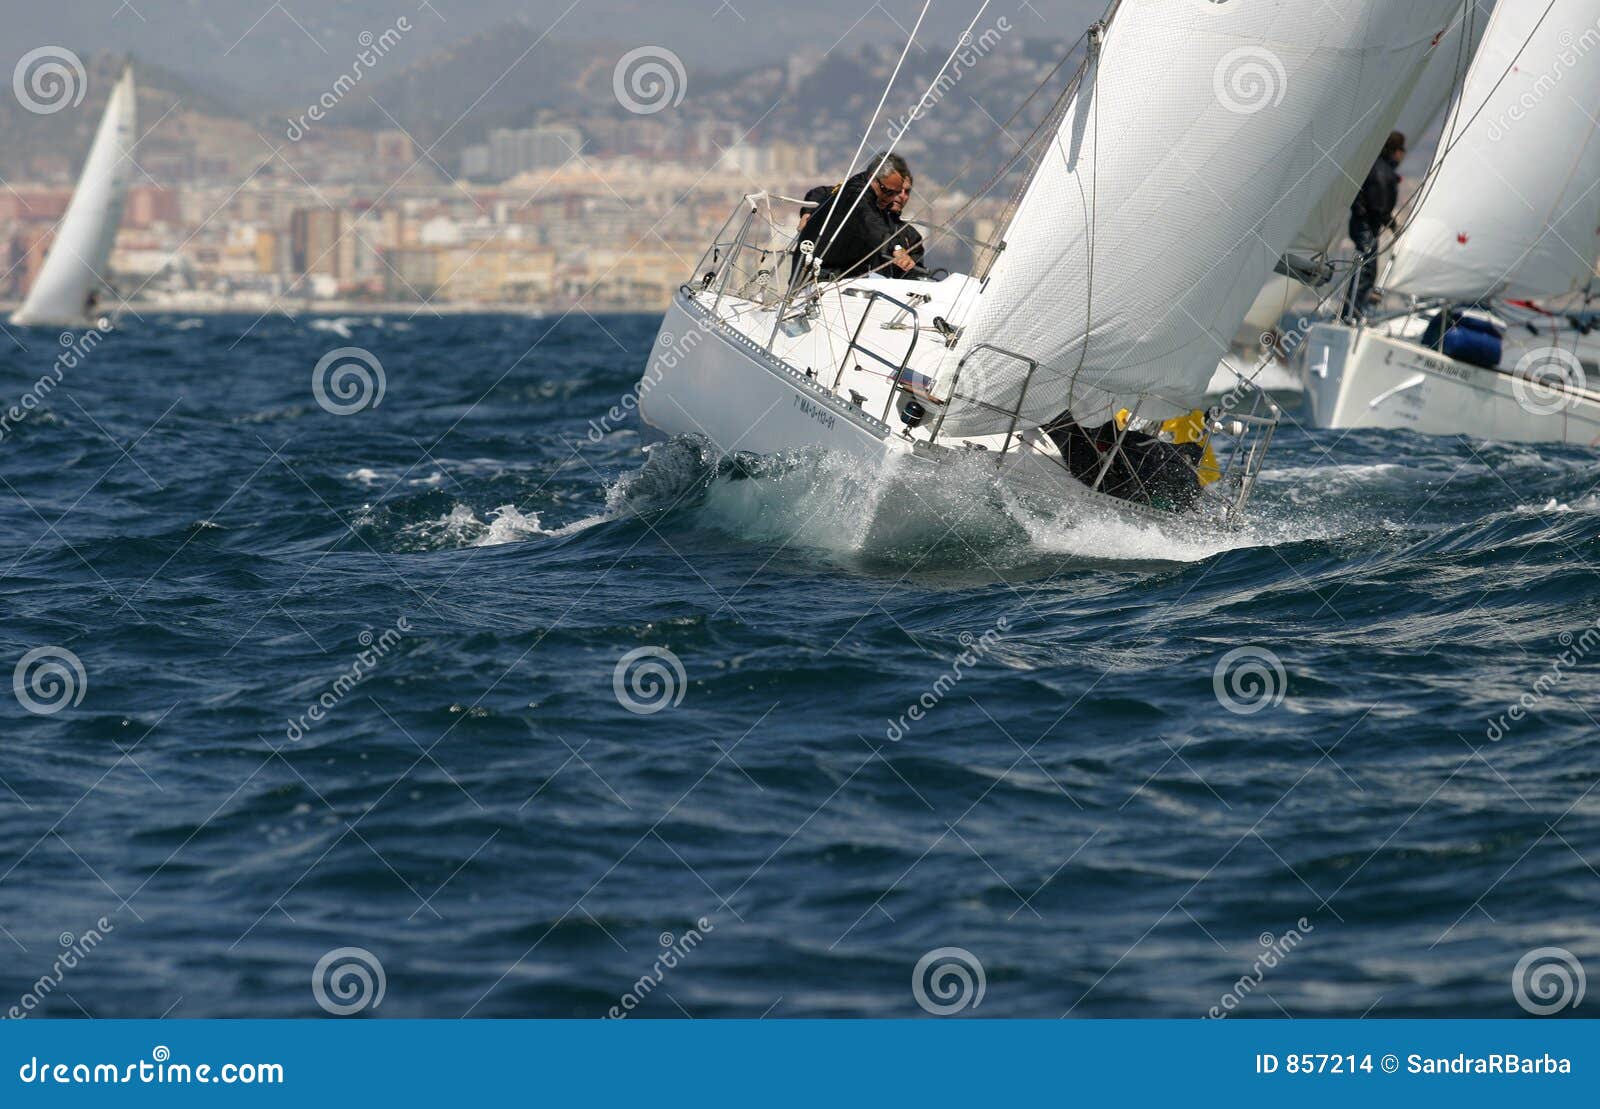 sailing, yachting #12